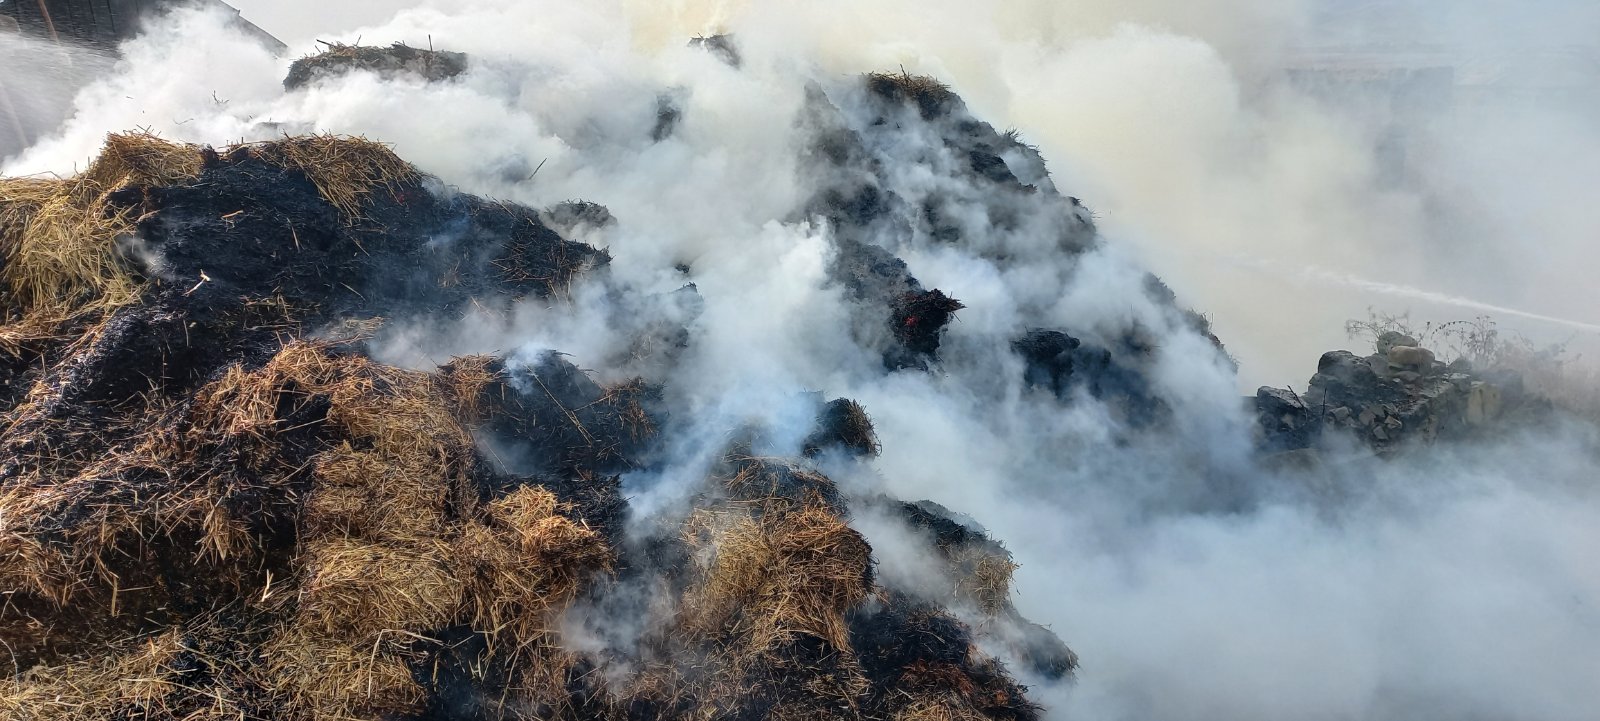 Մեծ Պարնի գյուղում այրվել է մոտ 500 հակ անասնակեր